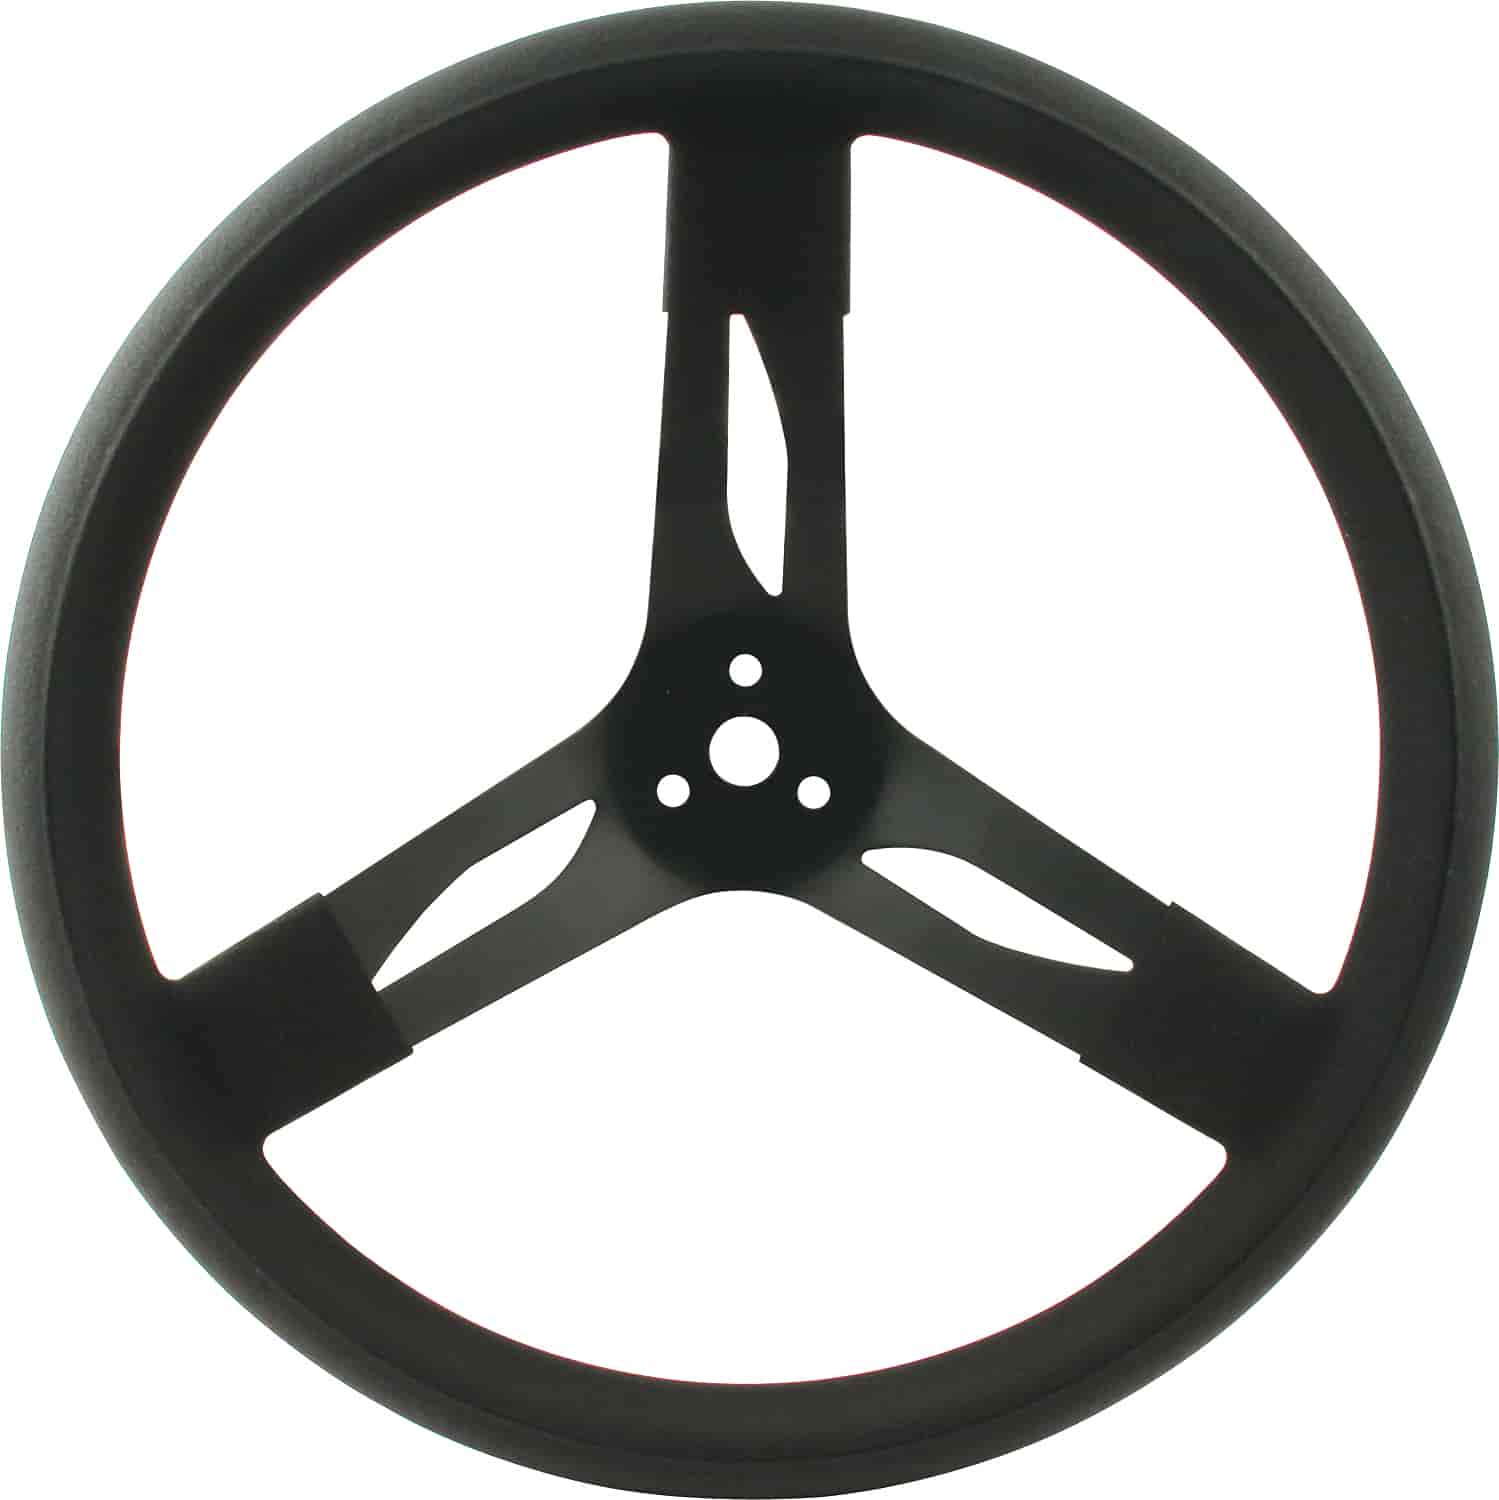 Steel Steering Wheel 15" Black Grip